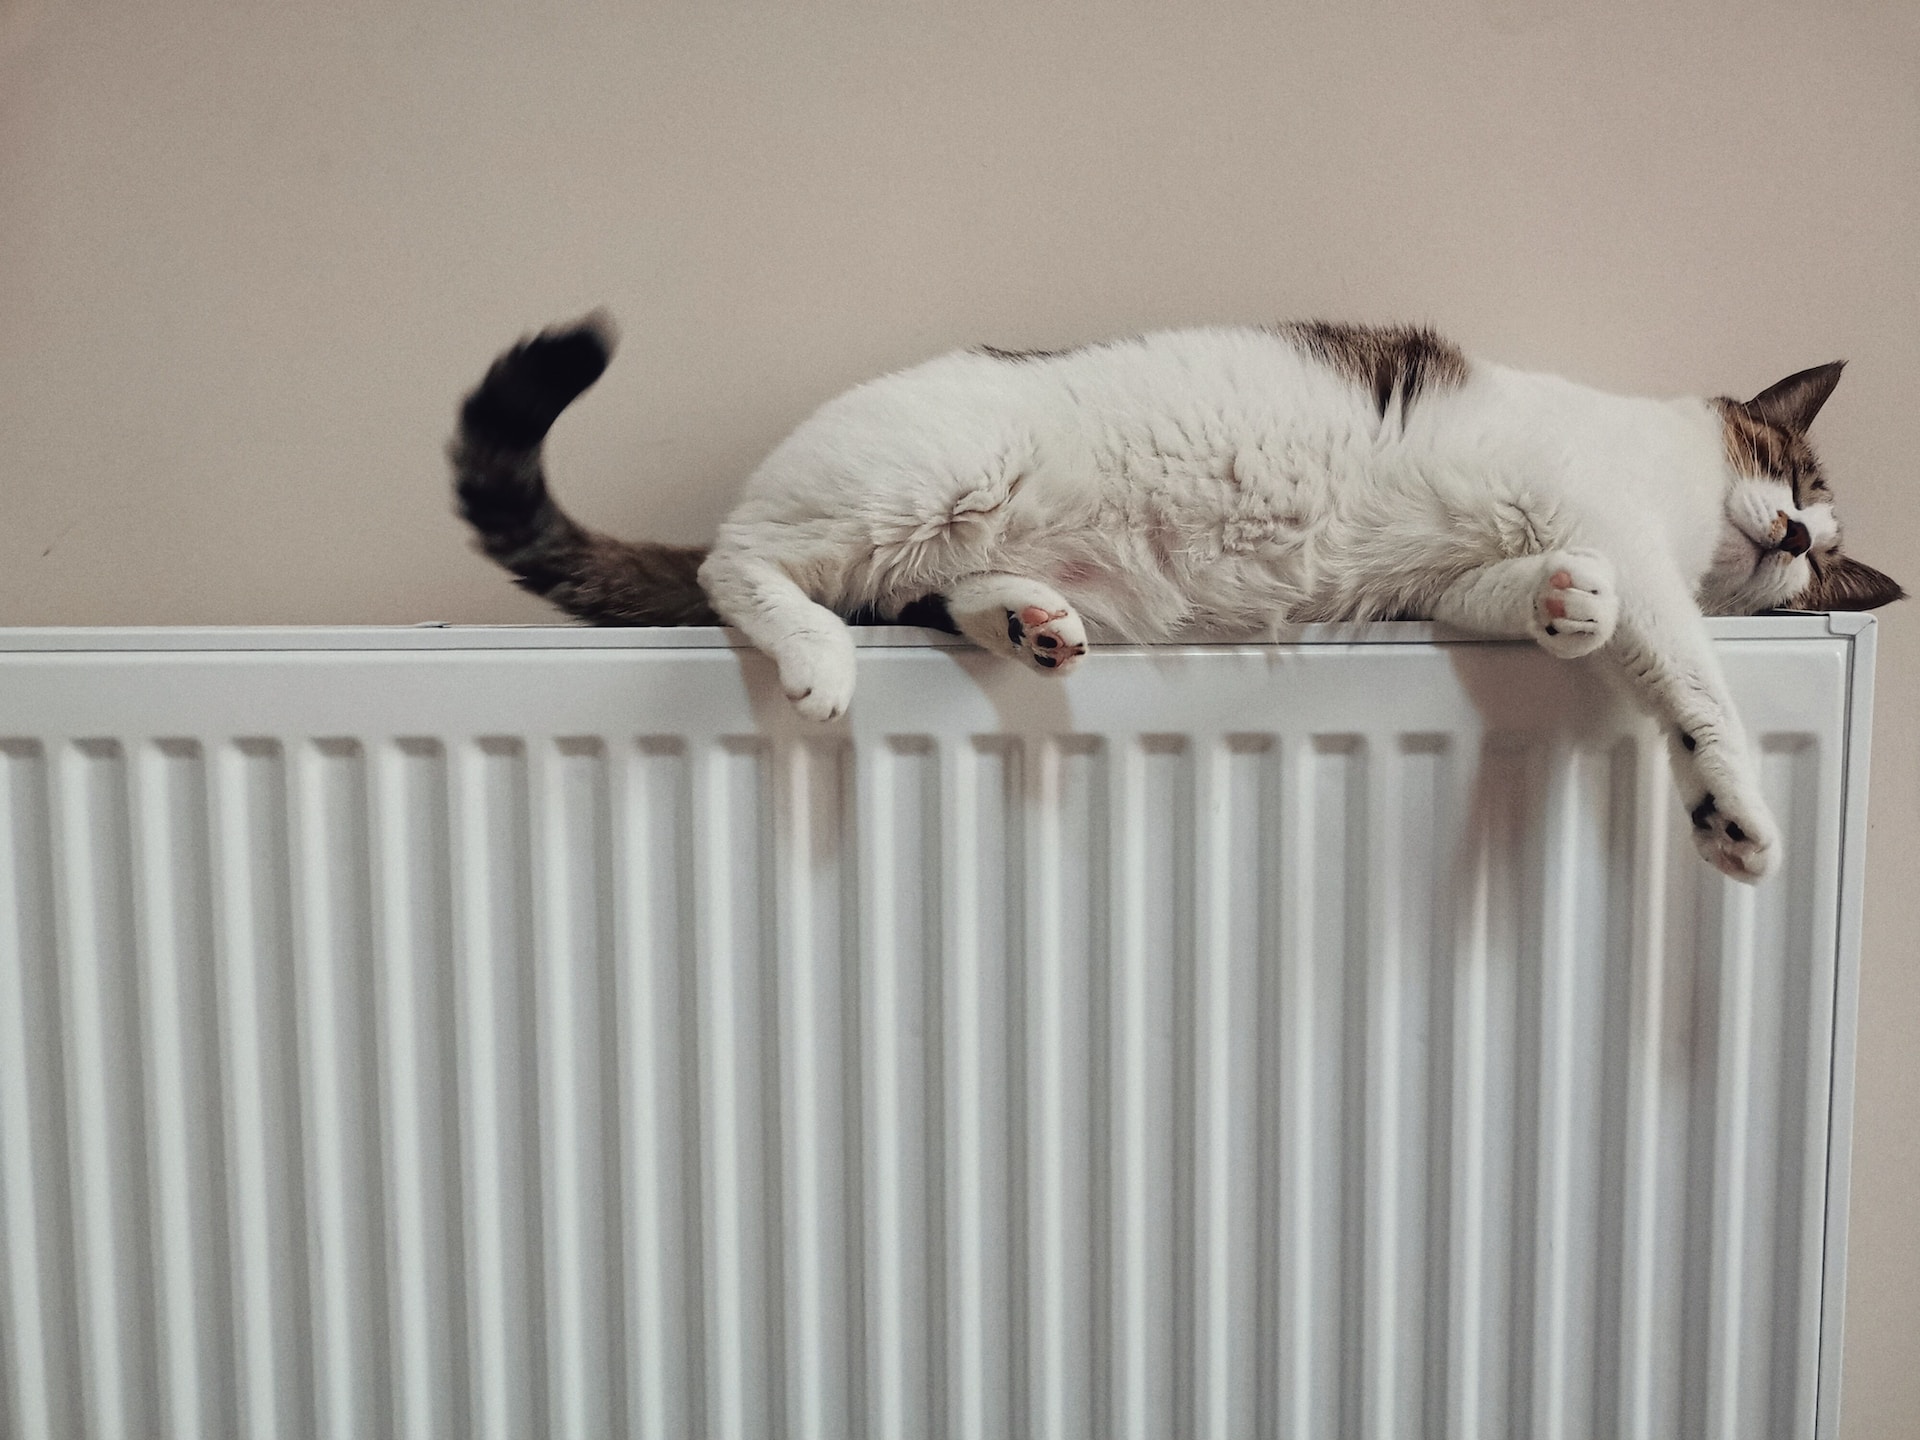 witte kat met zwarte staart ligt op verwarming die is verbonden met duurzame warmtepomp